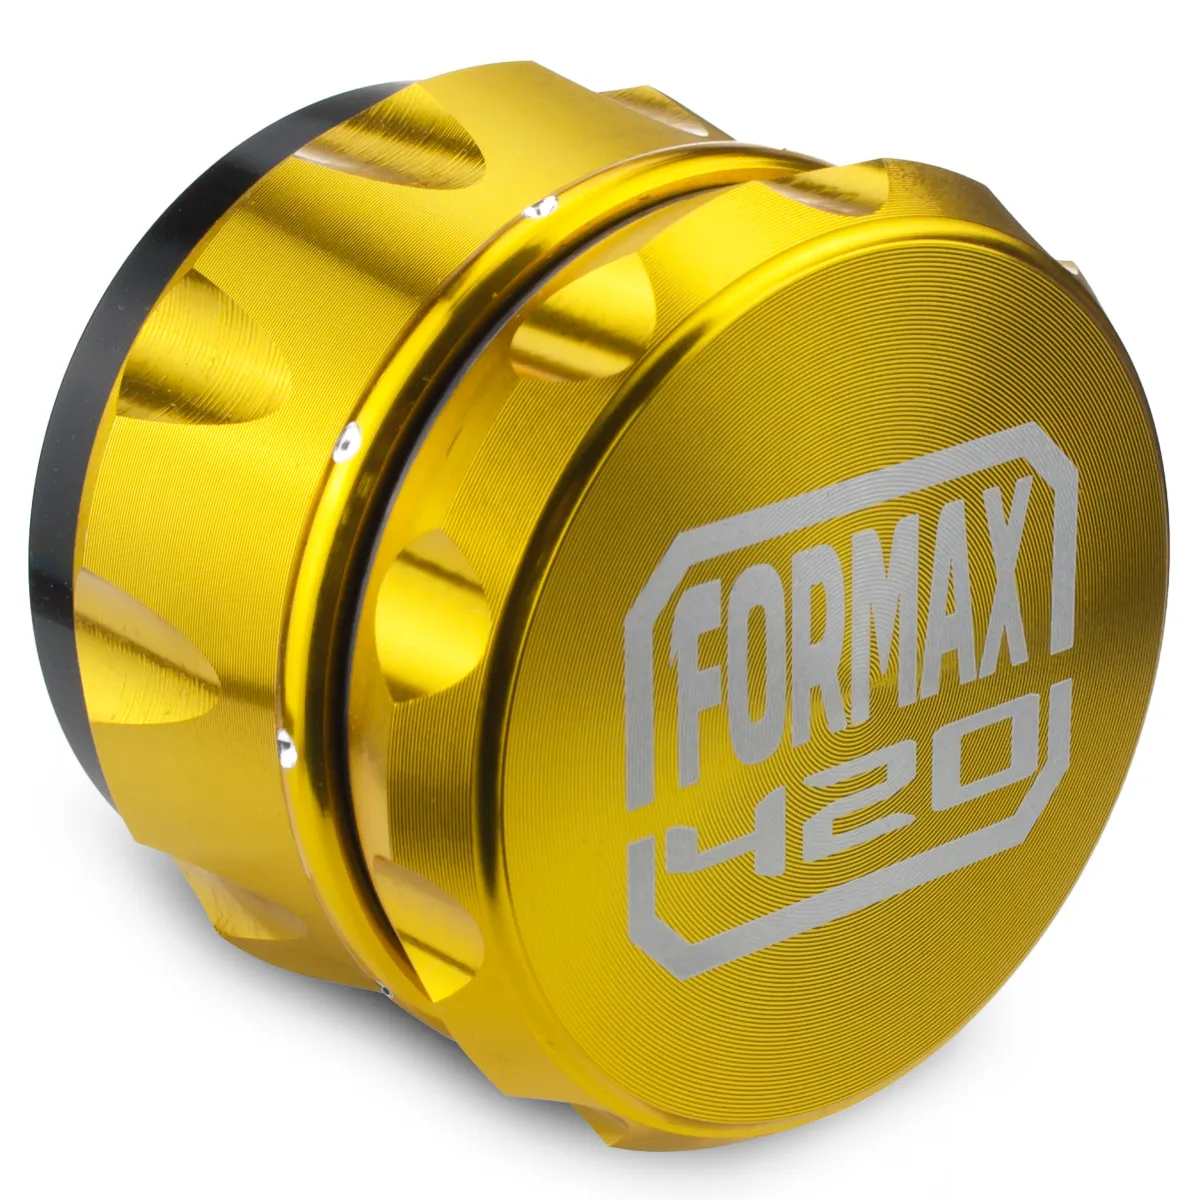 Formax420 2.5インチゴールドカービングメタルハーブグラインダー4ピースクラッシャープレミアム品質アルミニウム送料無料